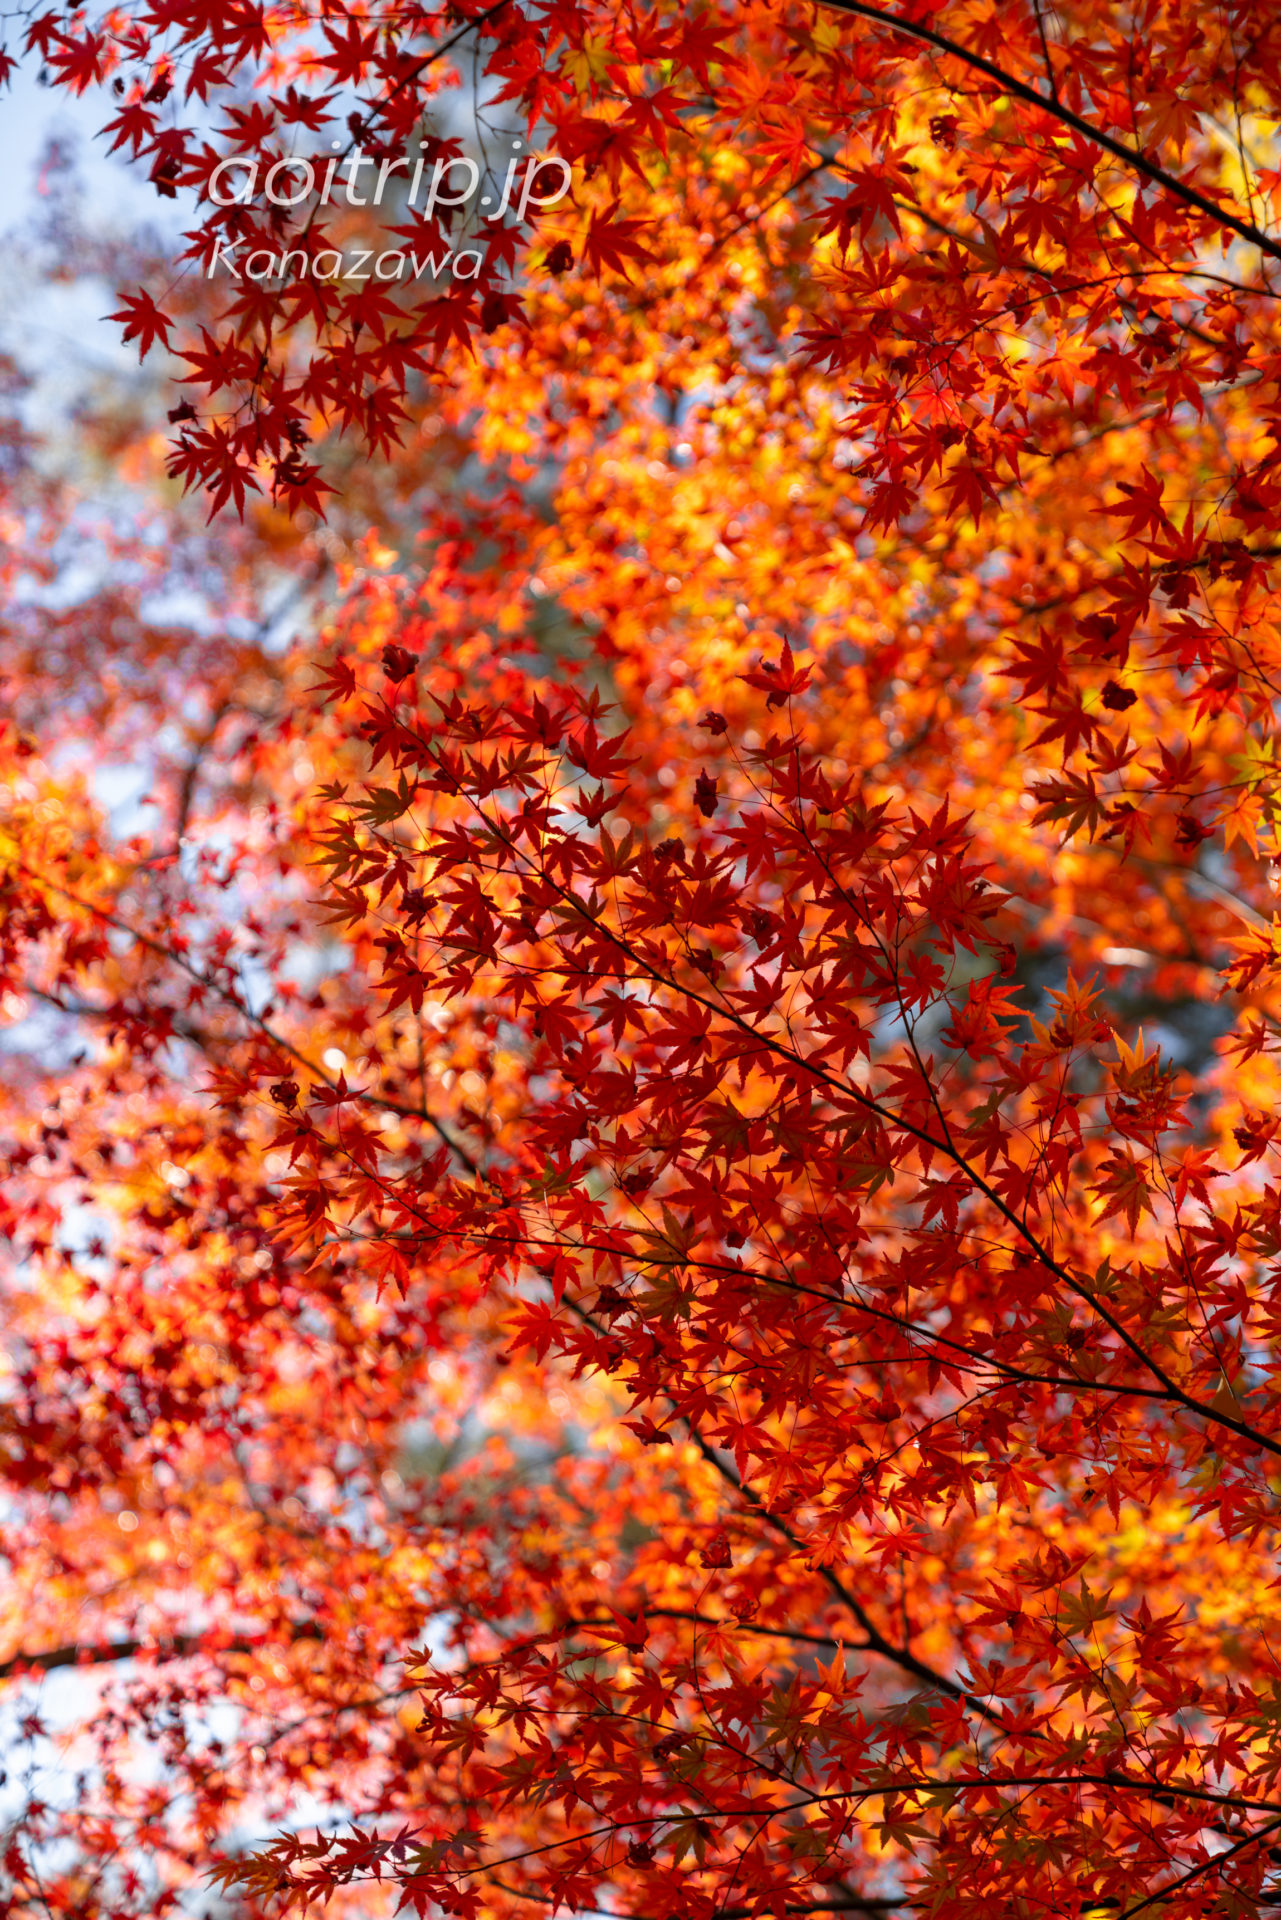 秋の金沢 兼六園 紅葉 Kanazawa Kenrokuen Garden in Autumn